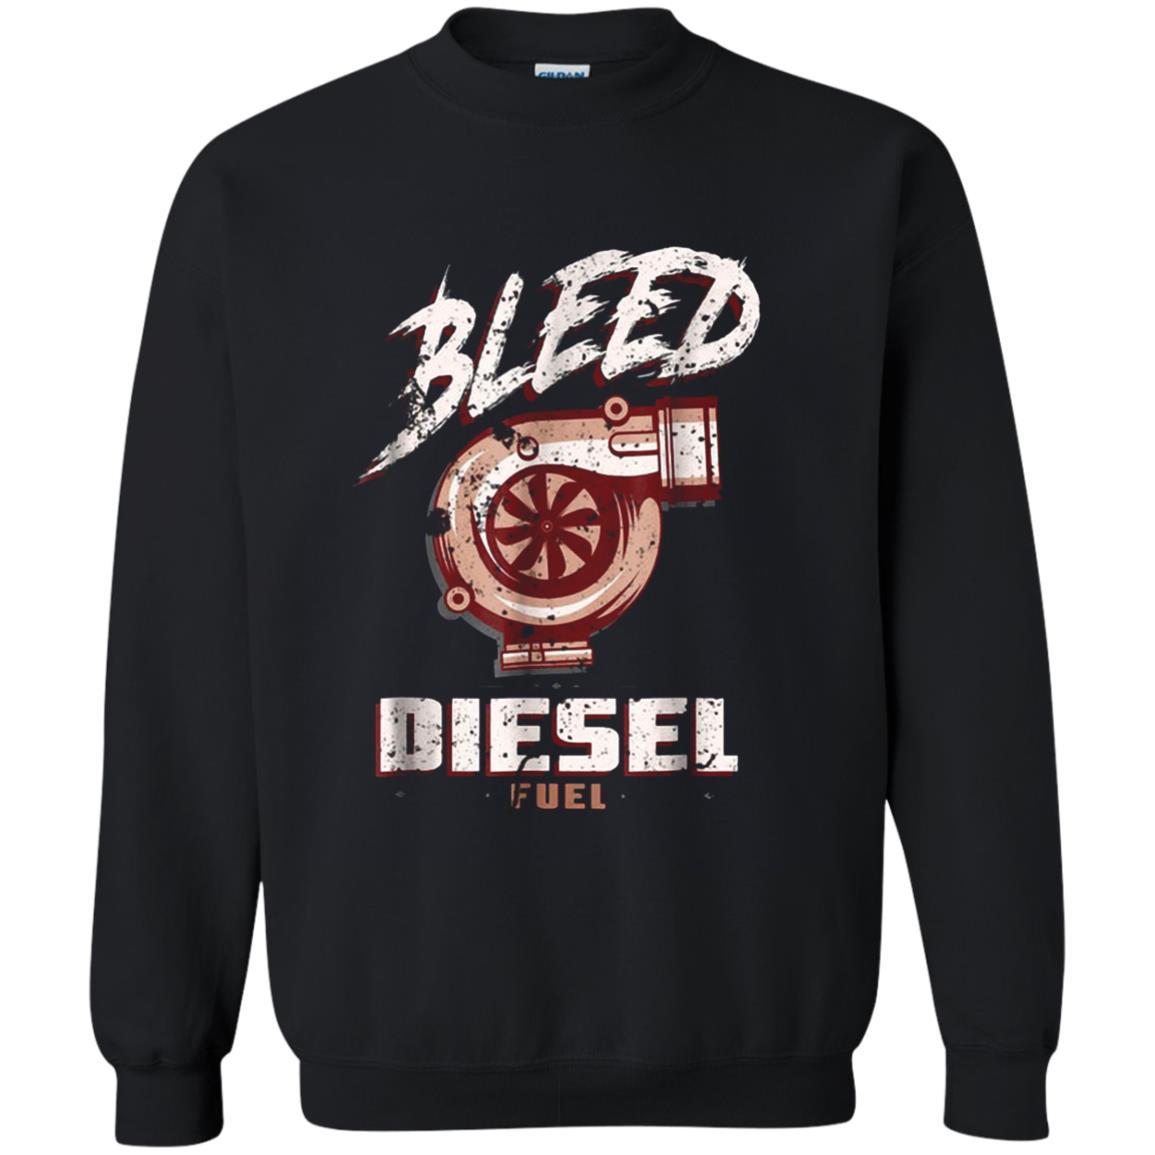 Bleed Diesel Fuel Shirts